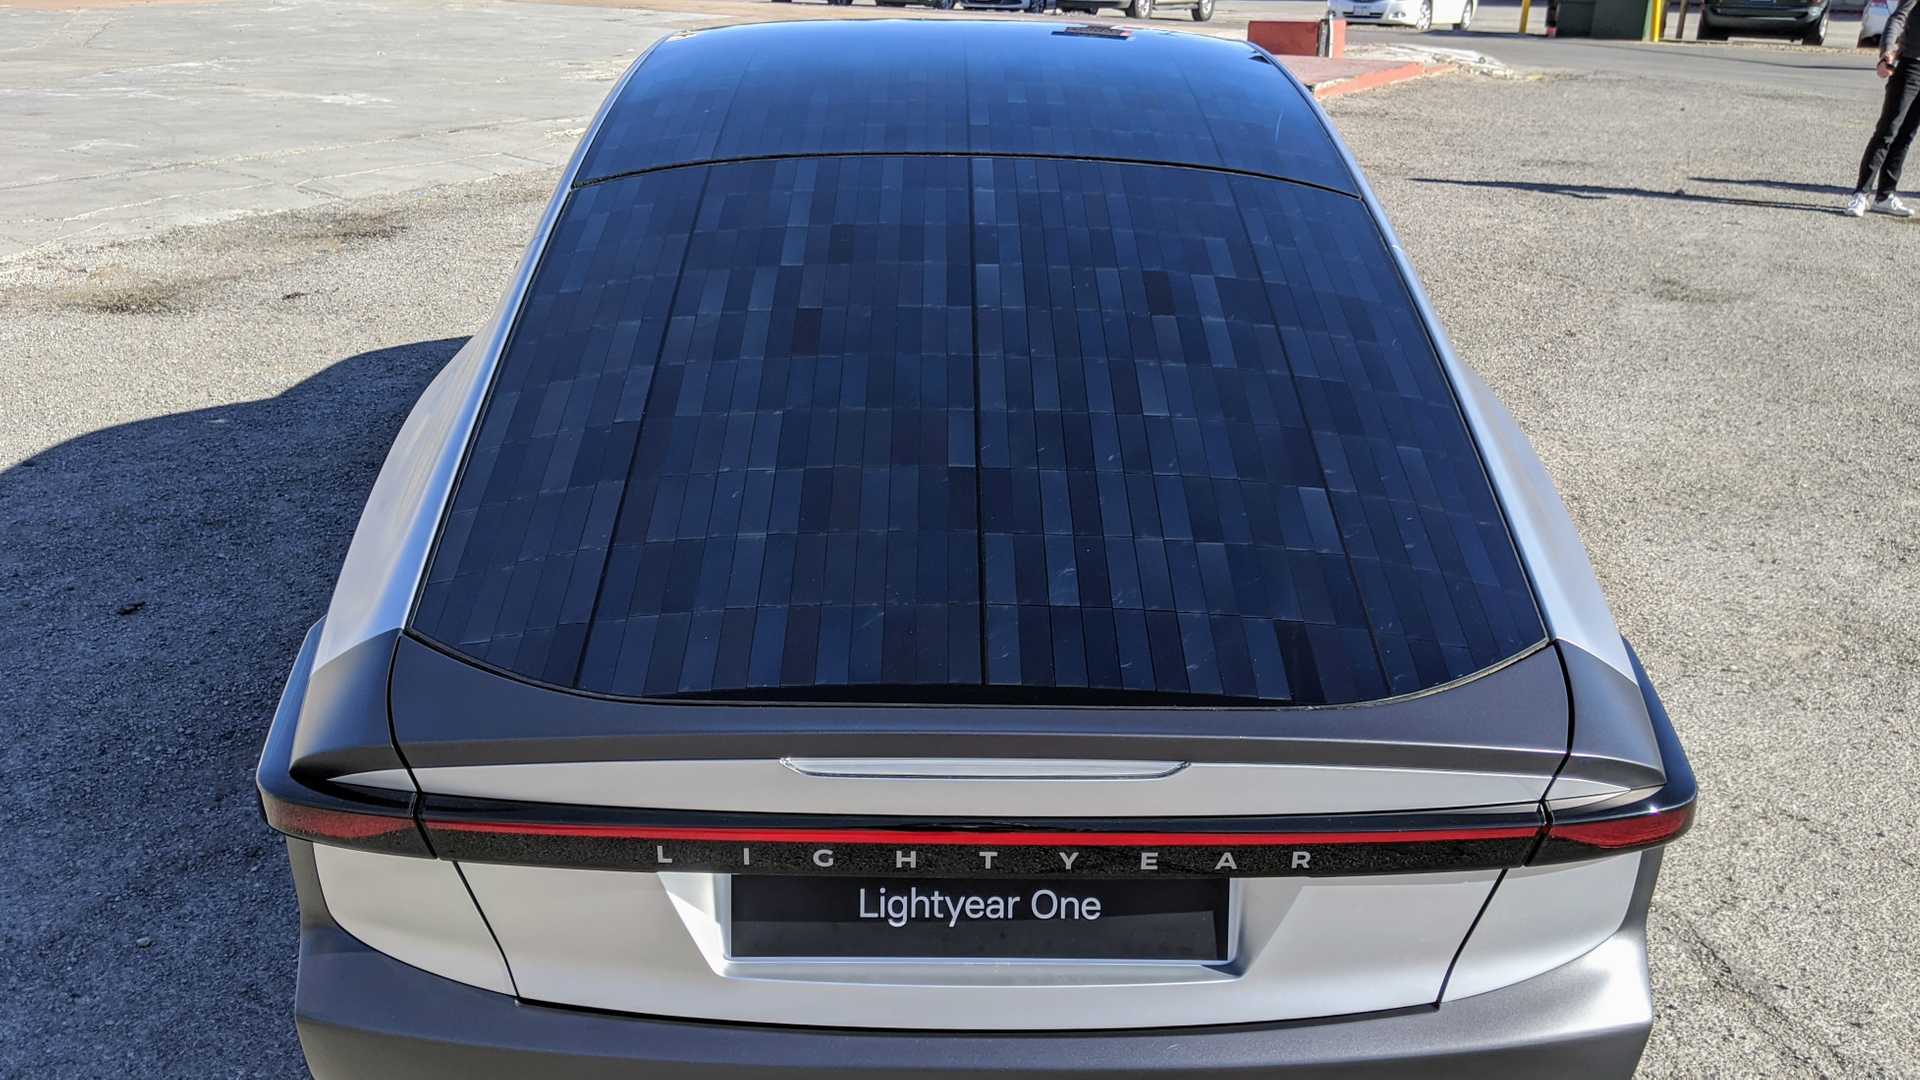 lightyear-one-solar-car-4.jpg